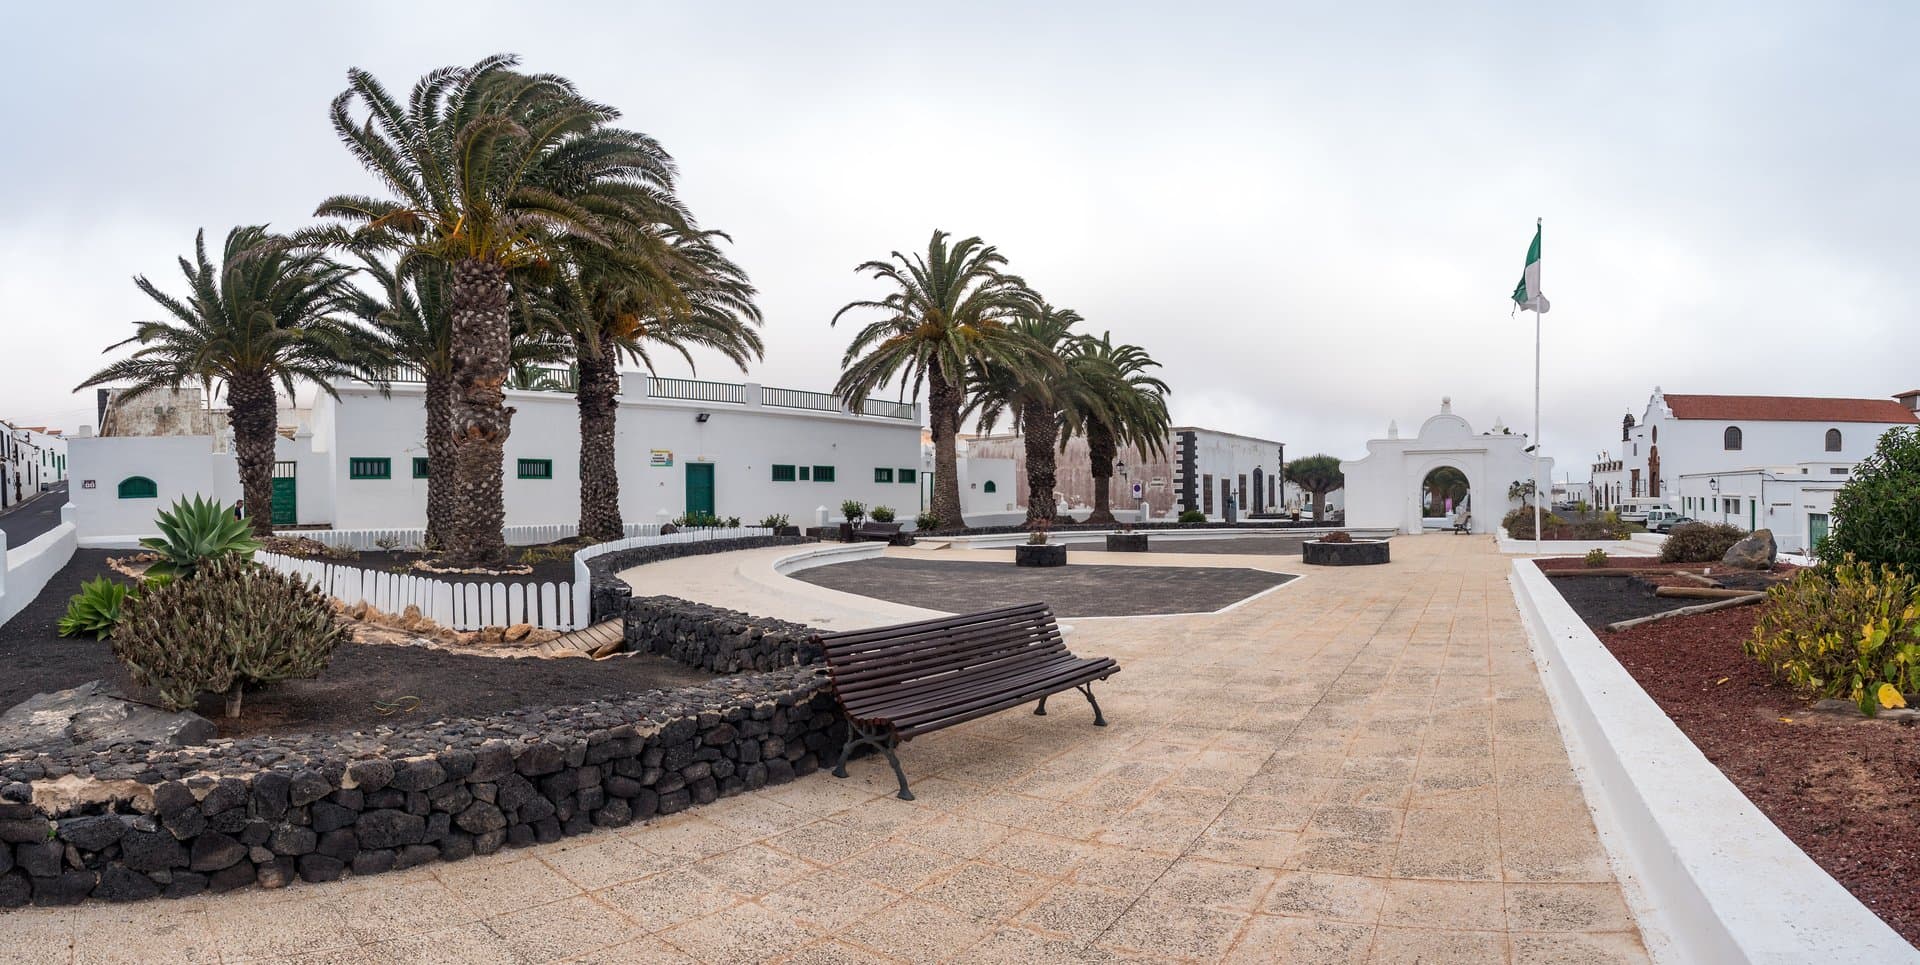 Free Teguise Tour Lanzarote4